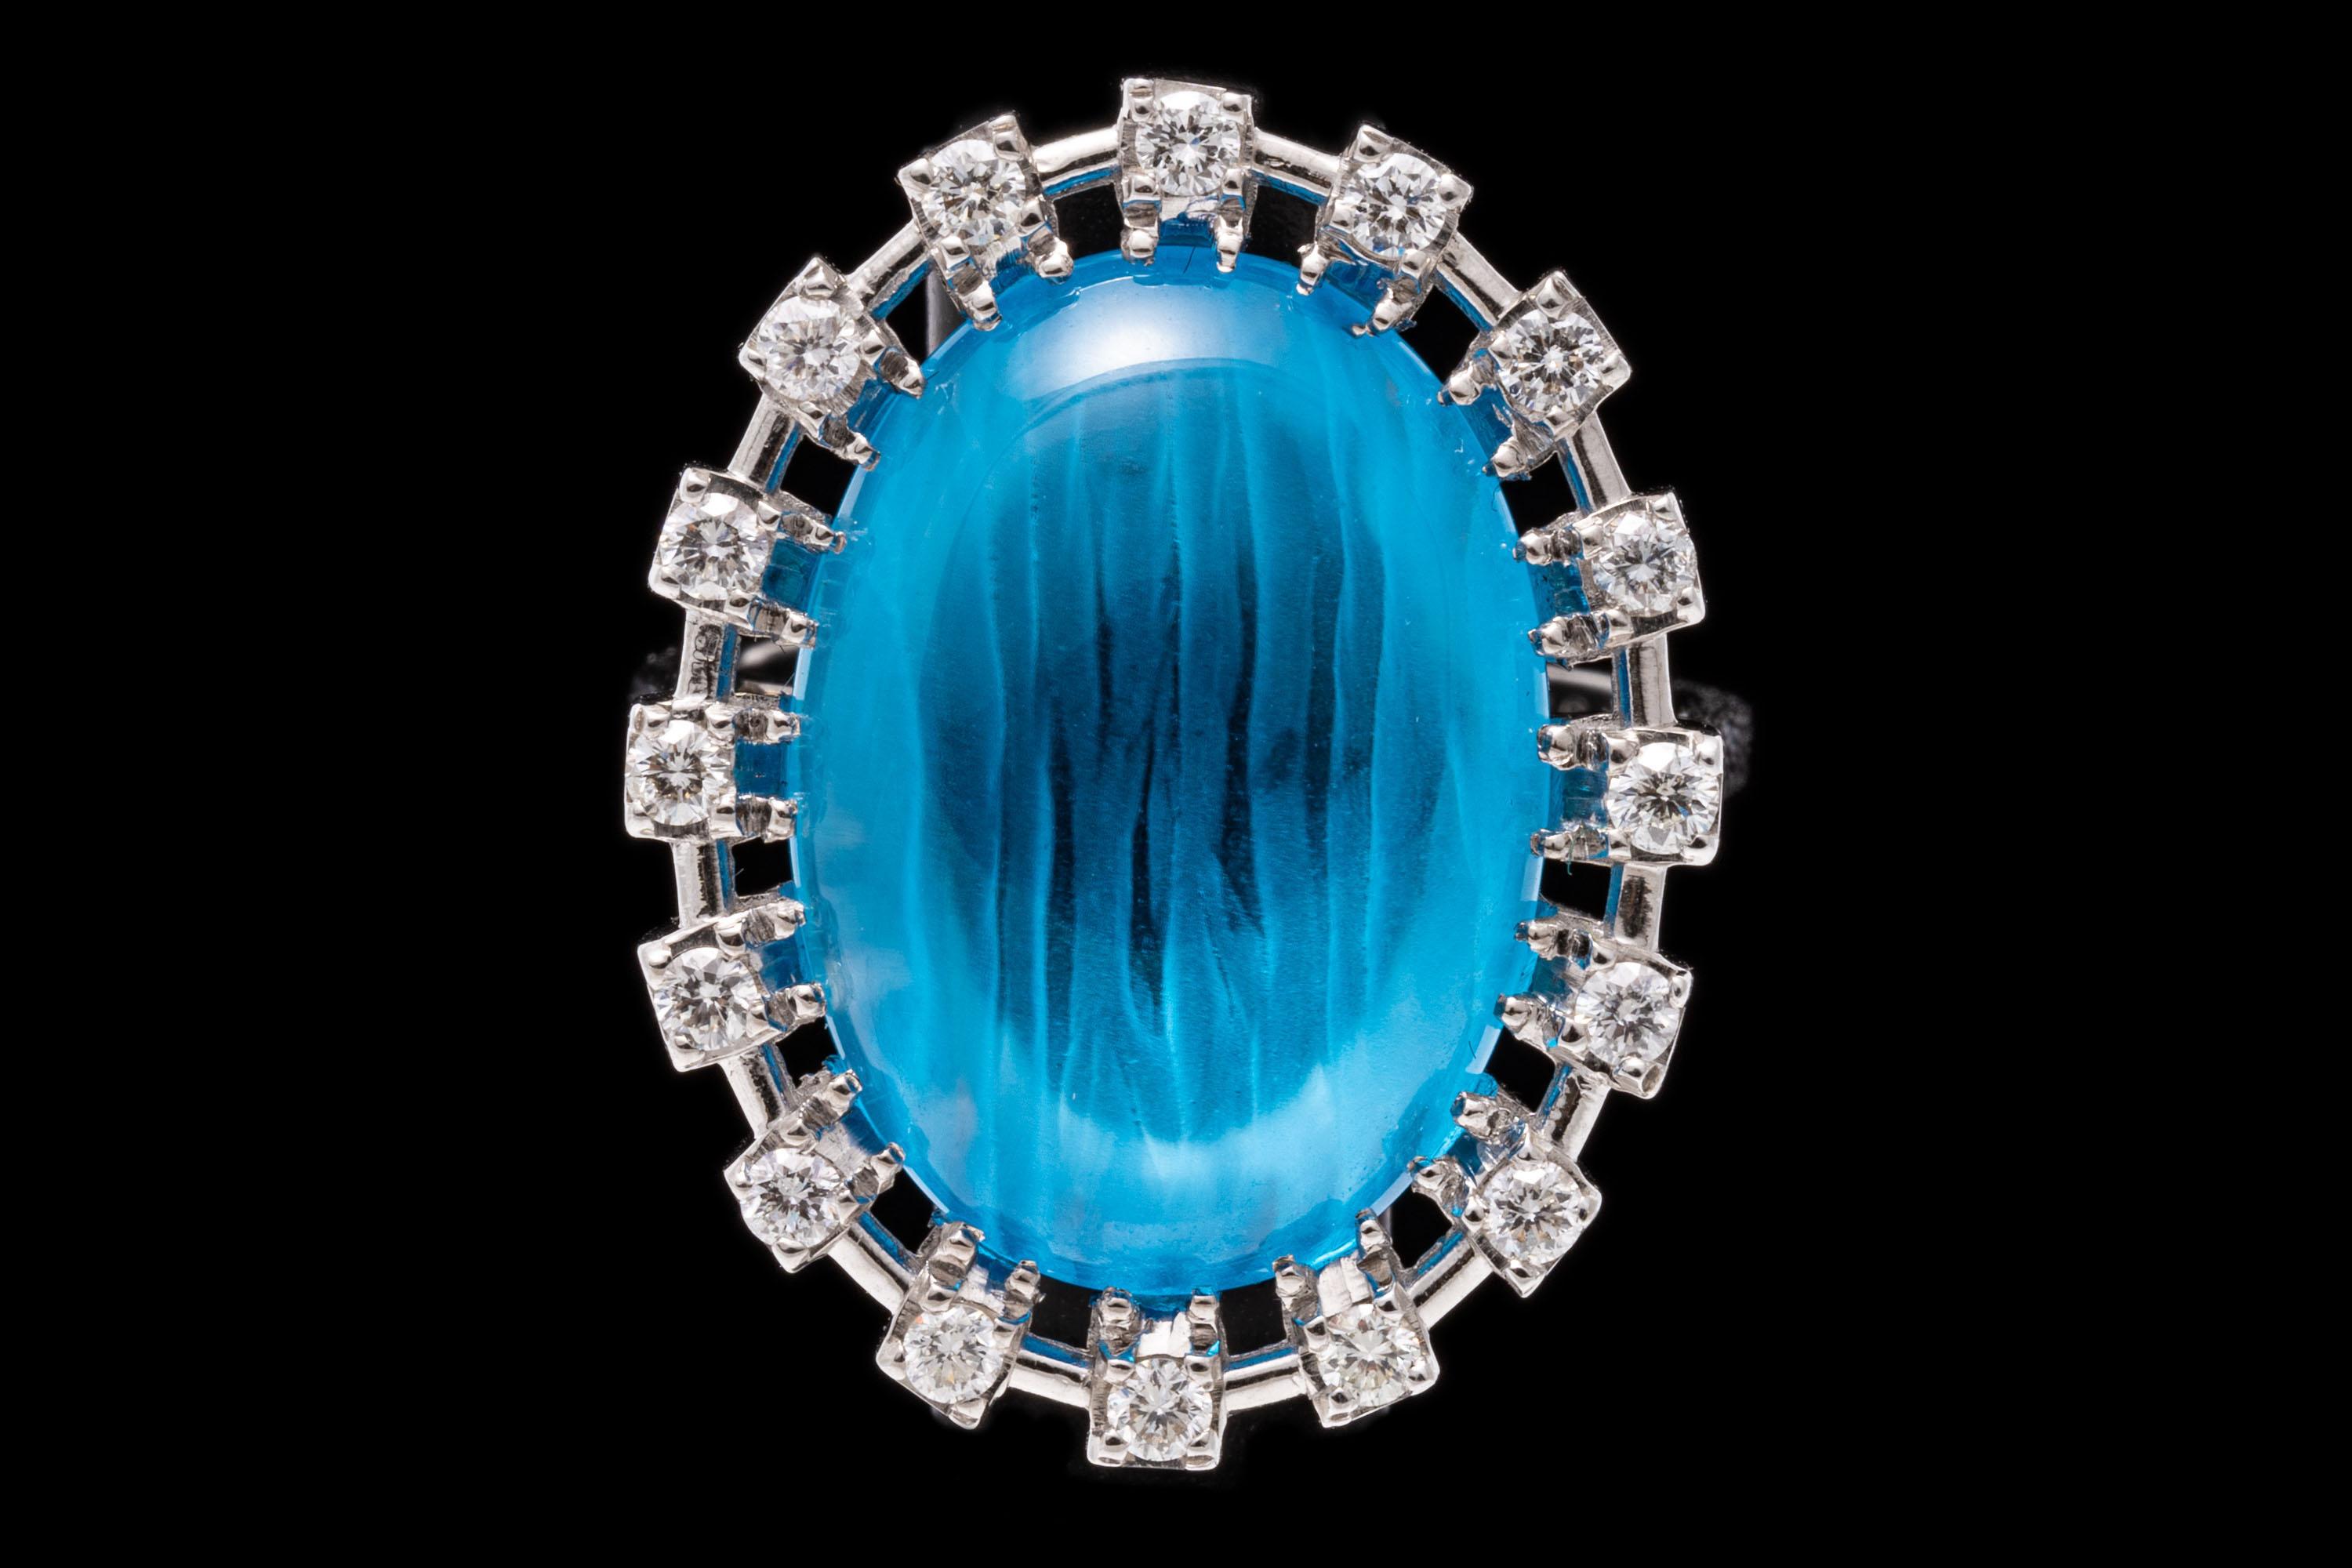 Bague en or blanc 18k. Cette magnifique bague de cocktail est sertie au centre d'une topaze bleue de couleur bleu moyen, de taille ovale fantaisie, entourée d'un halo contemporain de diamants ronds à facettes, d'une valeur approximative de 0,16 TCW,